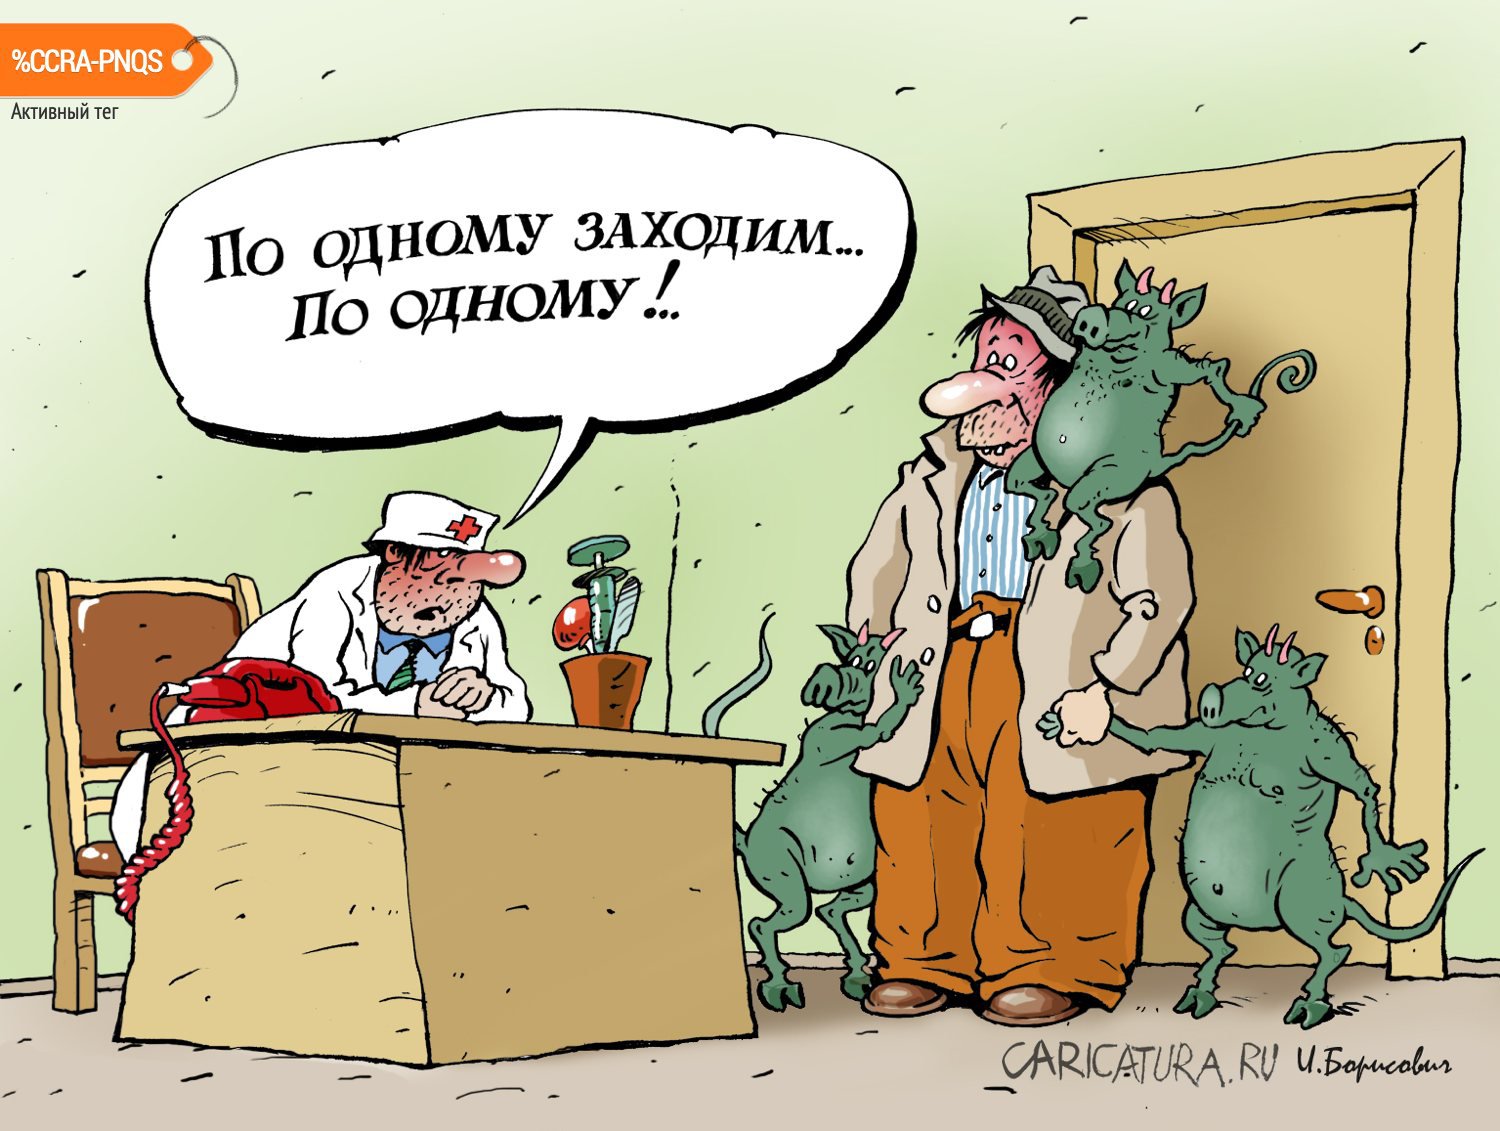 Карикатура "По одному заходим...", Игорь Елистратов